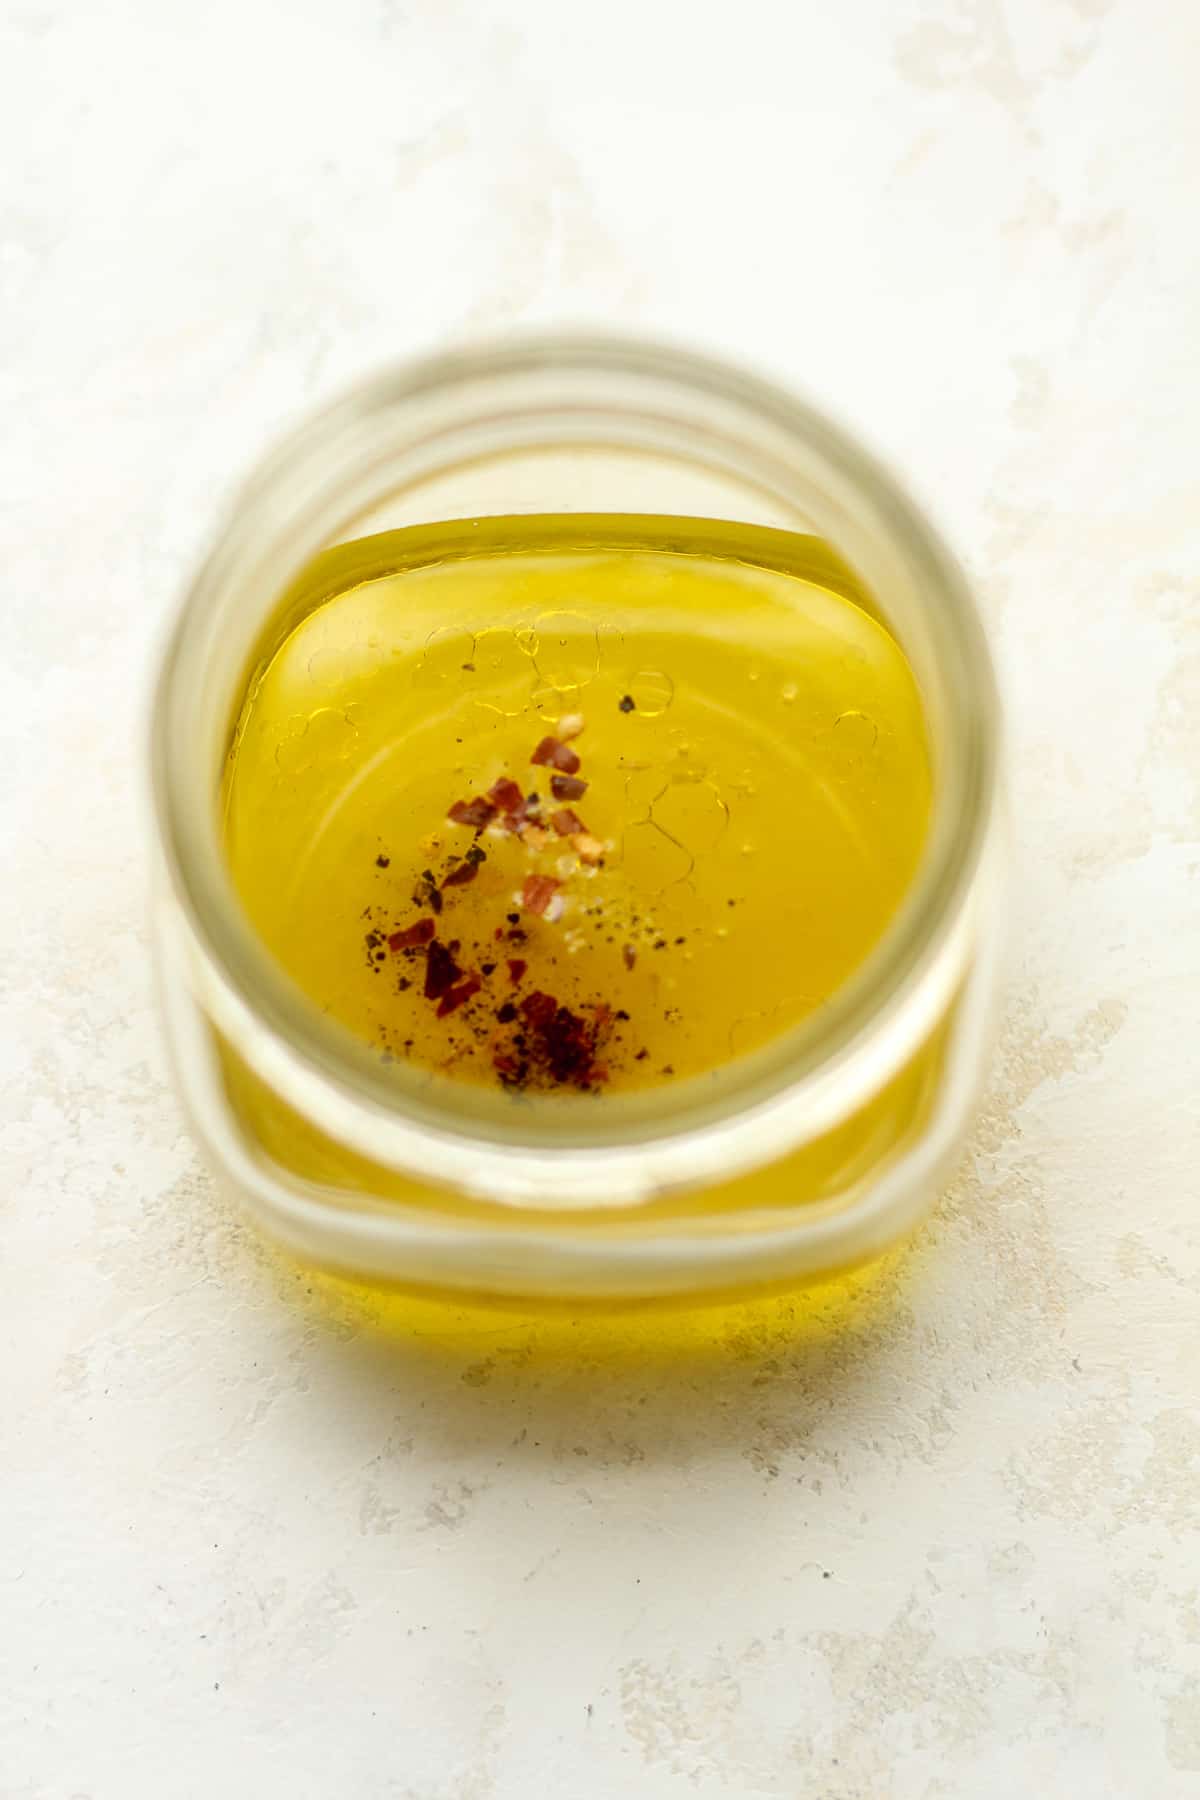 A jar of the lemon dressing ingredients.